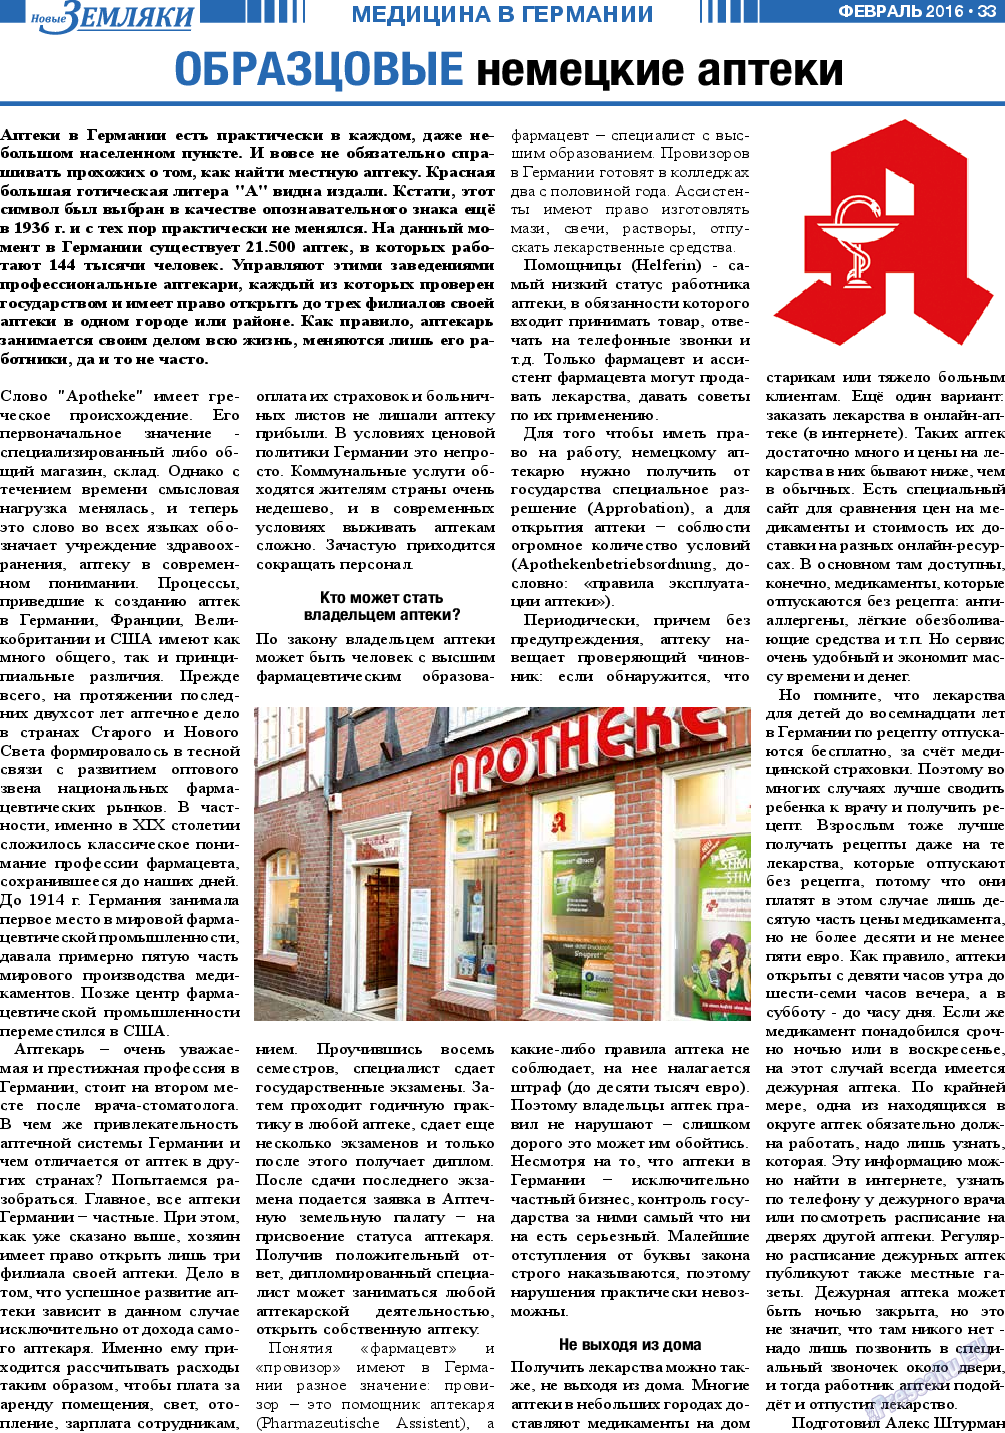 Новые Земляки, газета. 2016 №2 стр.33